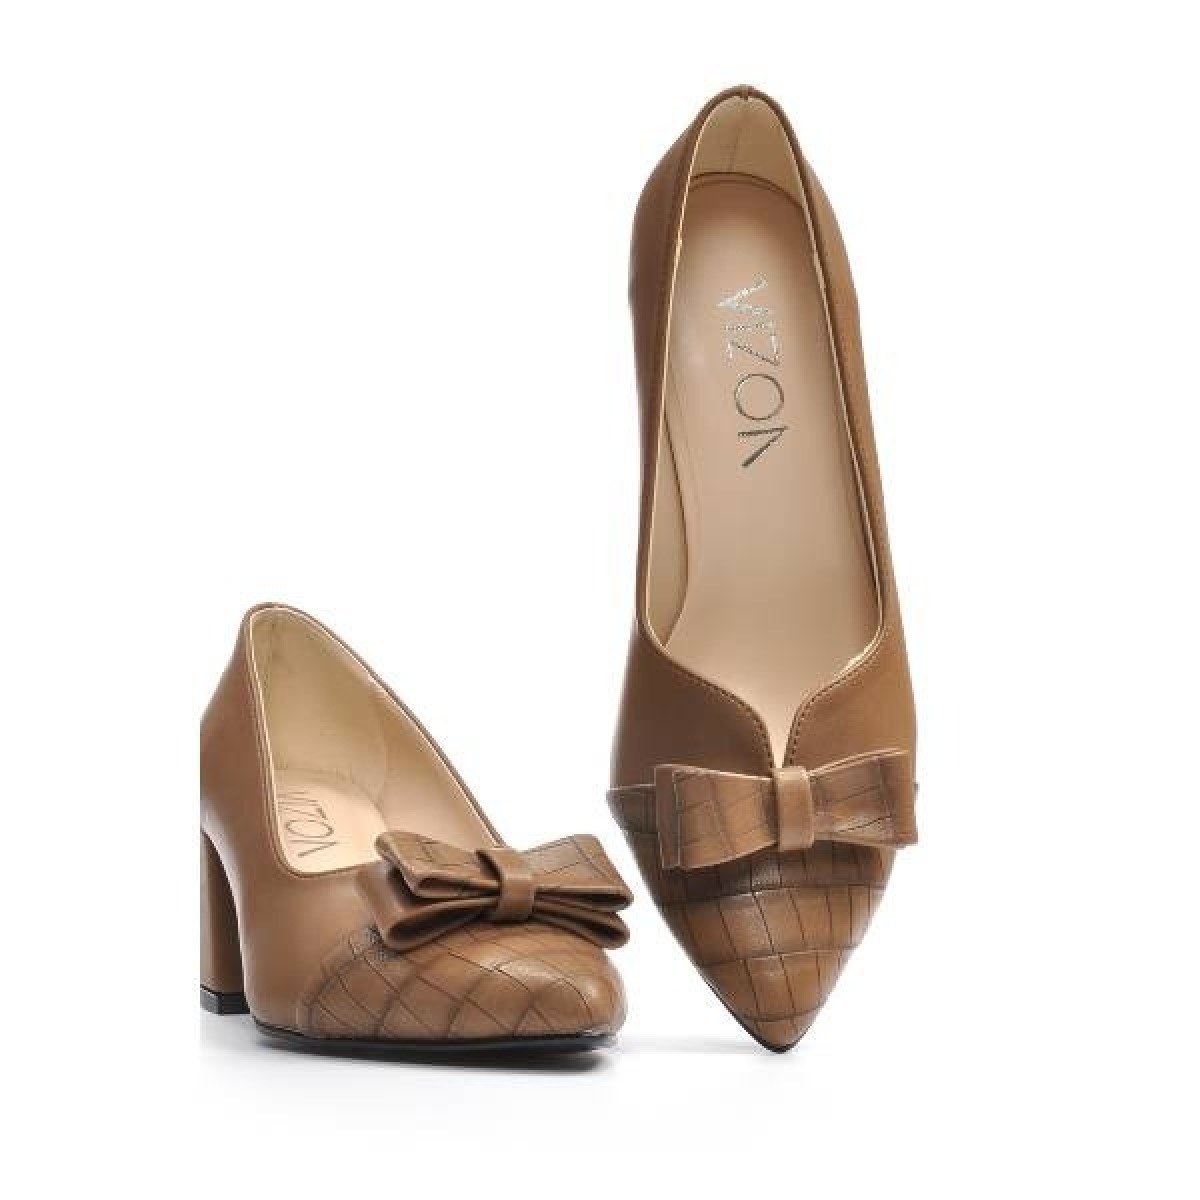 Flo Kadın  Vizon Klasik Topuklu Ayakkabı VZN19-113K. 7